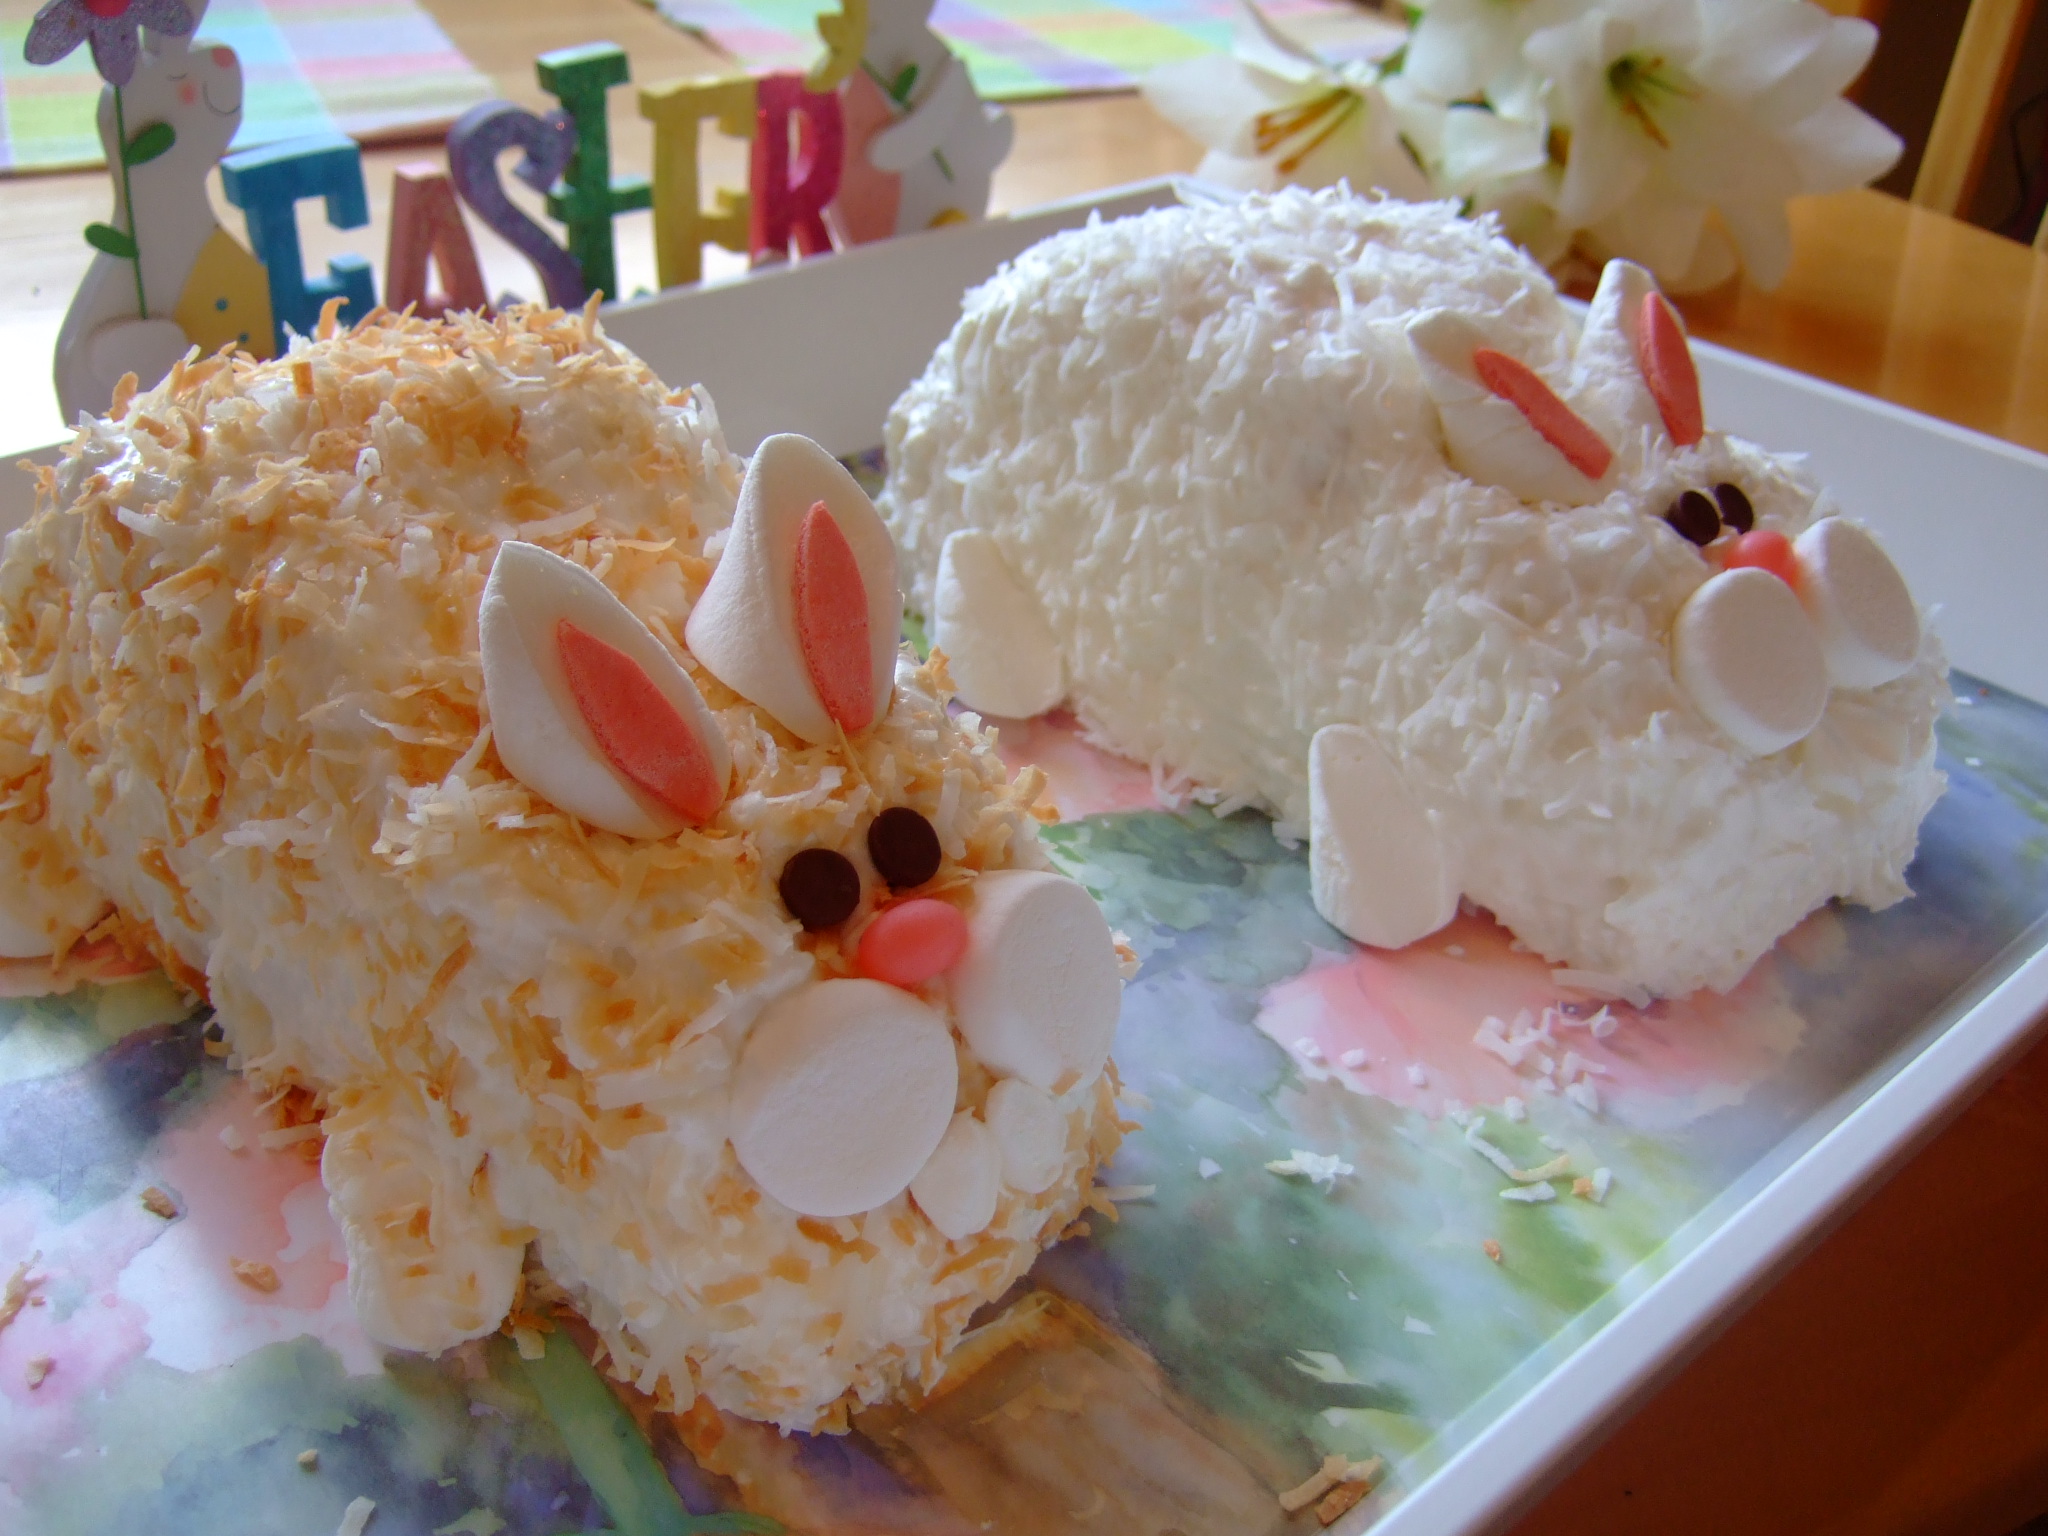 Easter Dessert Ideas